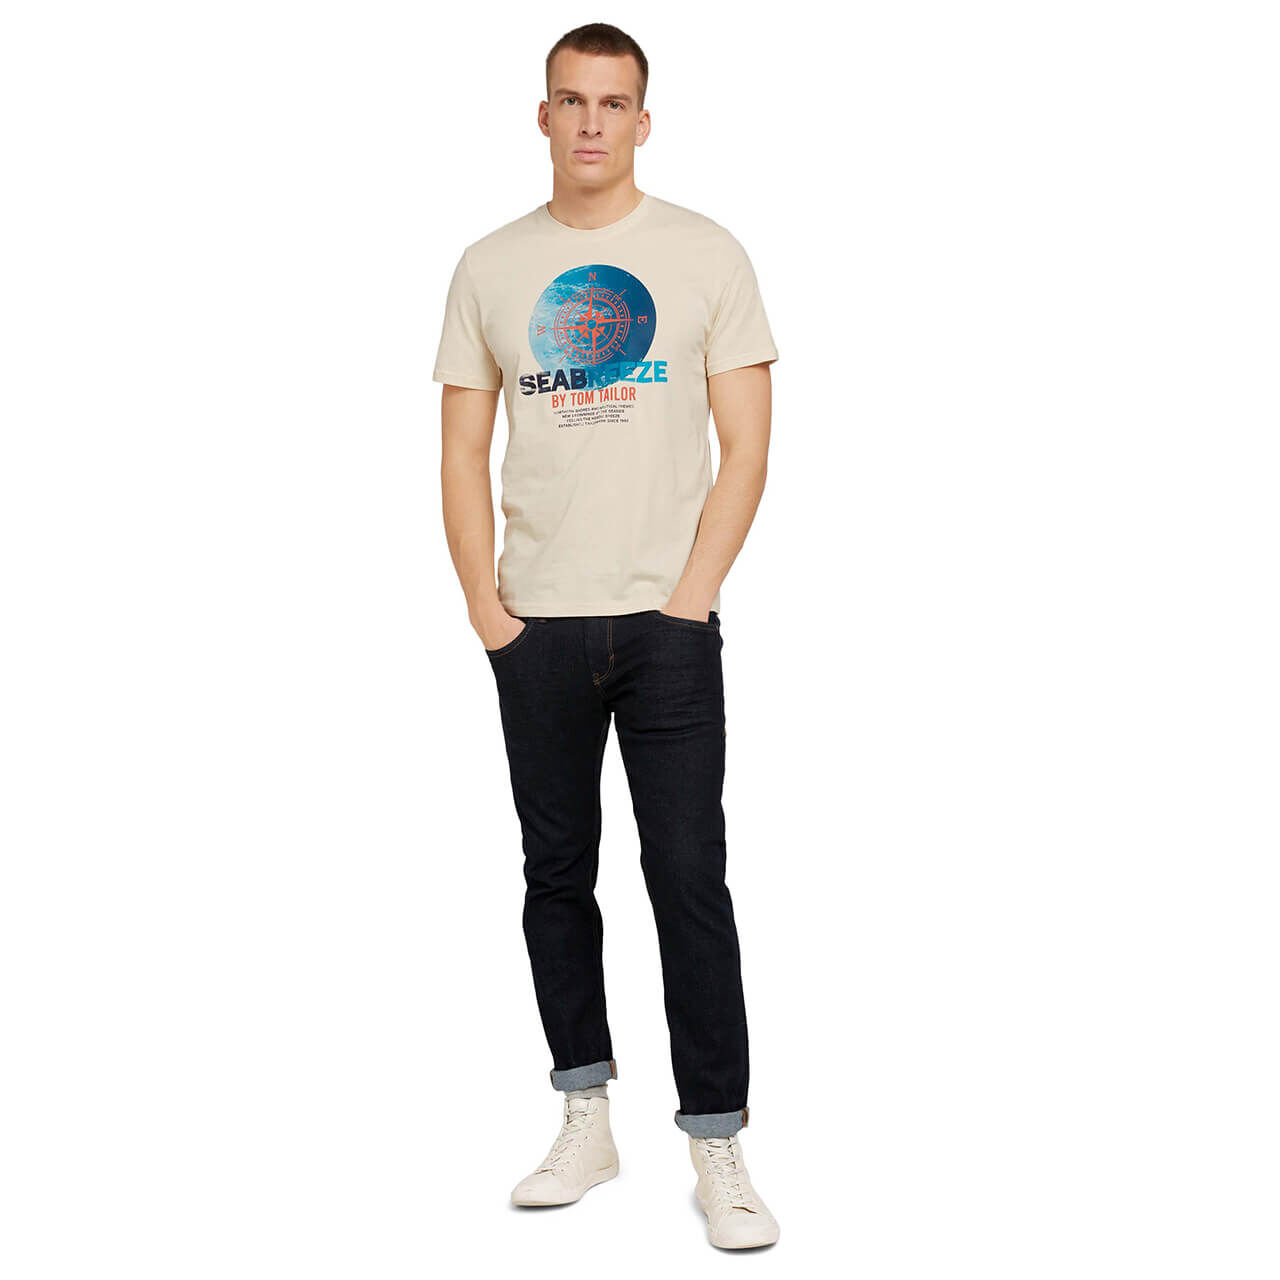 Tom Tailor T-Shirt für Herren in Cremeweiß mit Print, FarbNr.: 28130